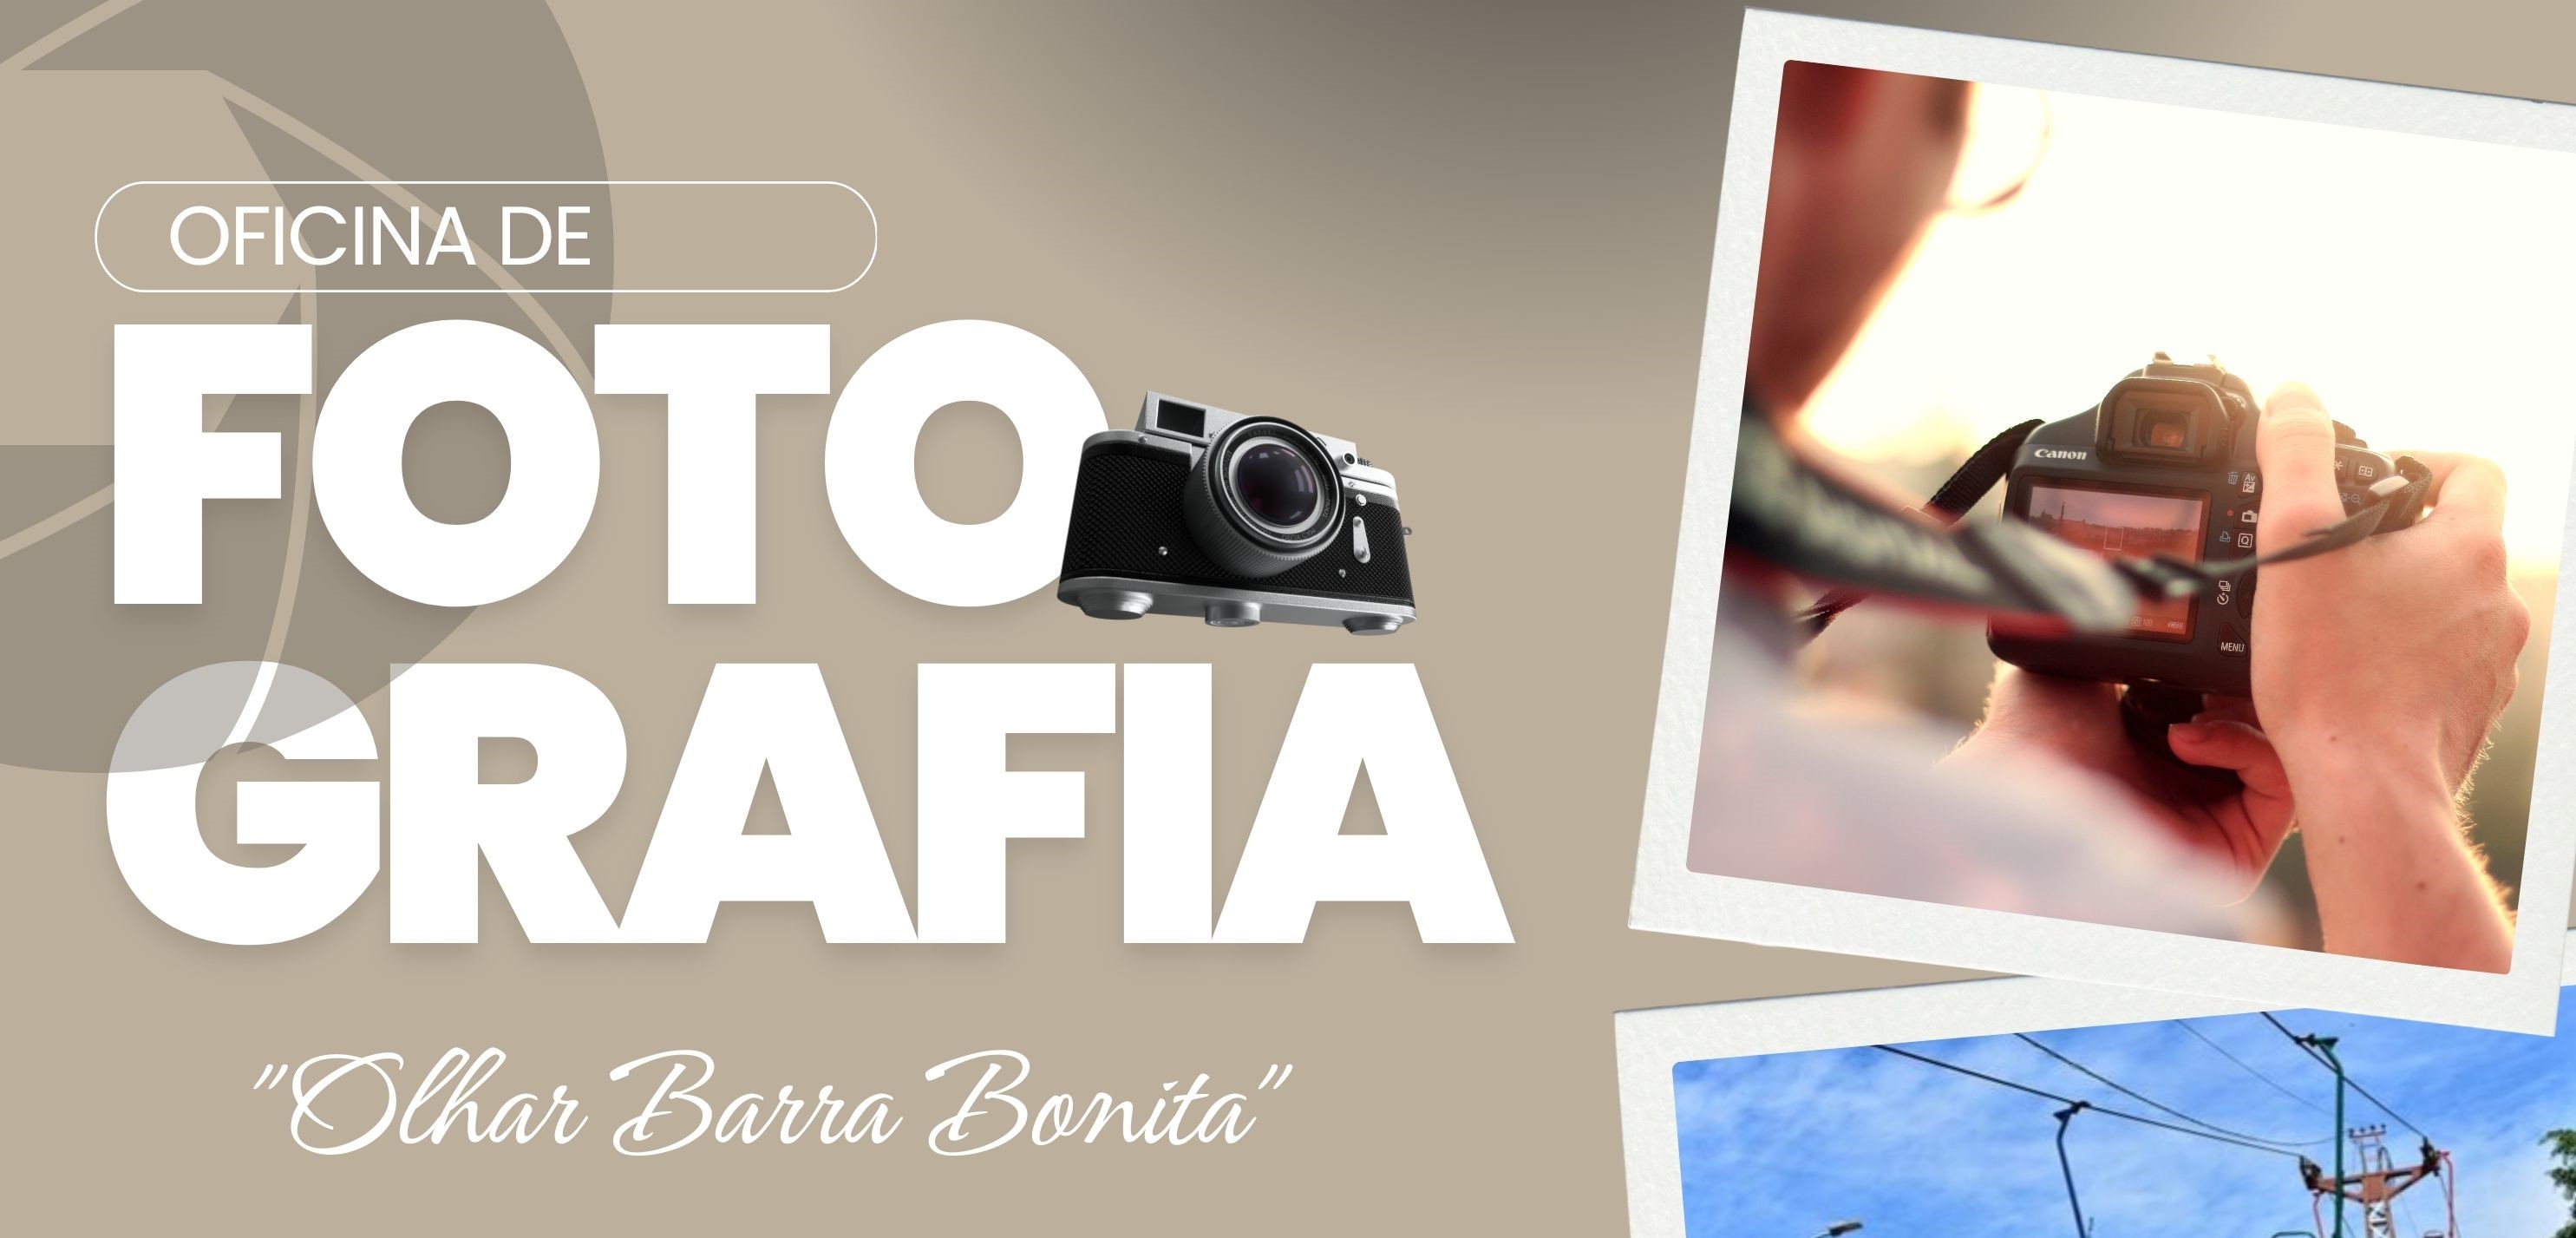 EXPLORE BARRA BONITA ATRAVÉS DAS LENTES! OFICINA DE FOTOGRAFIA GRATUITA!